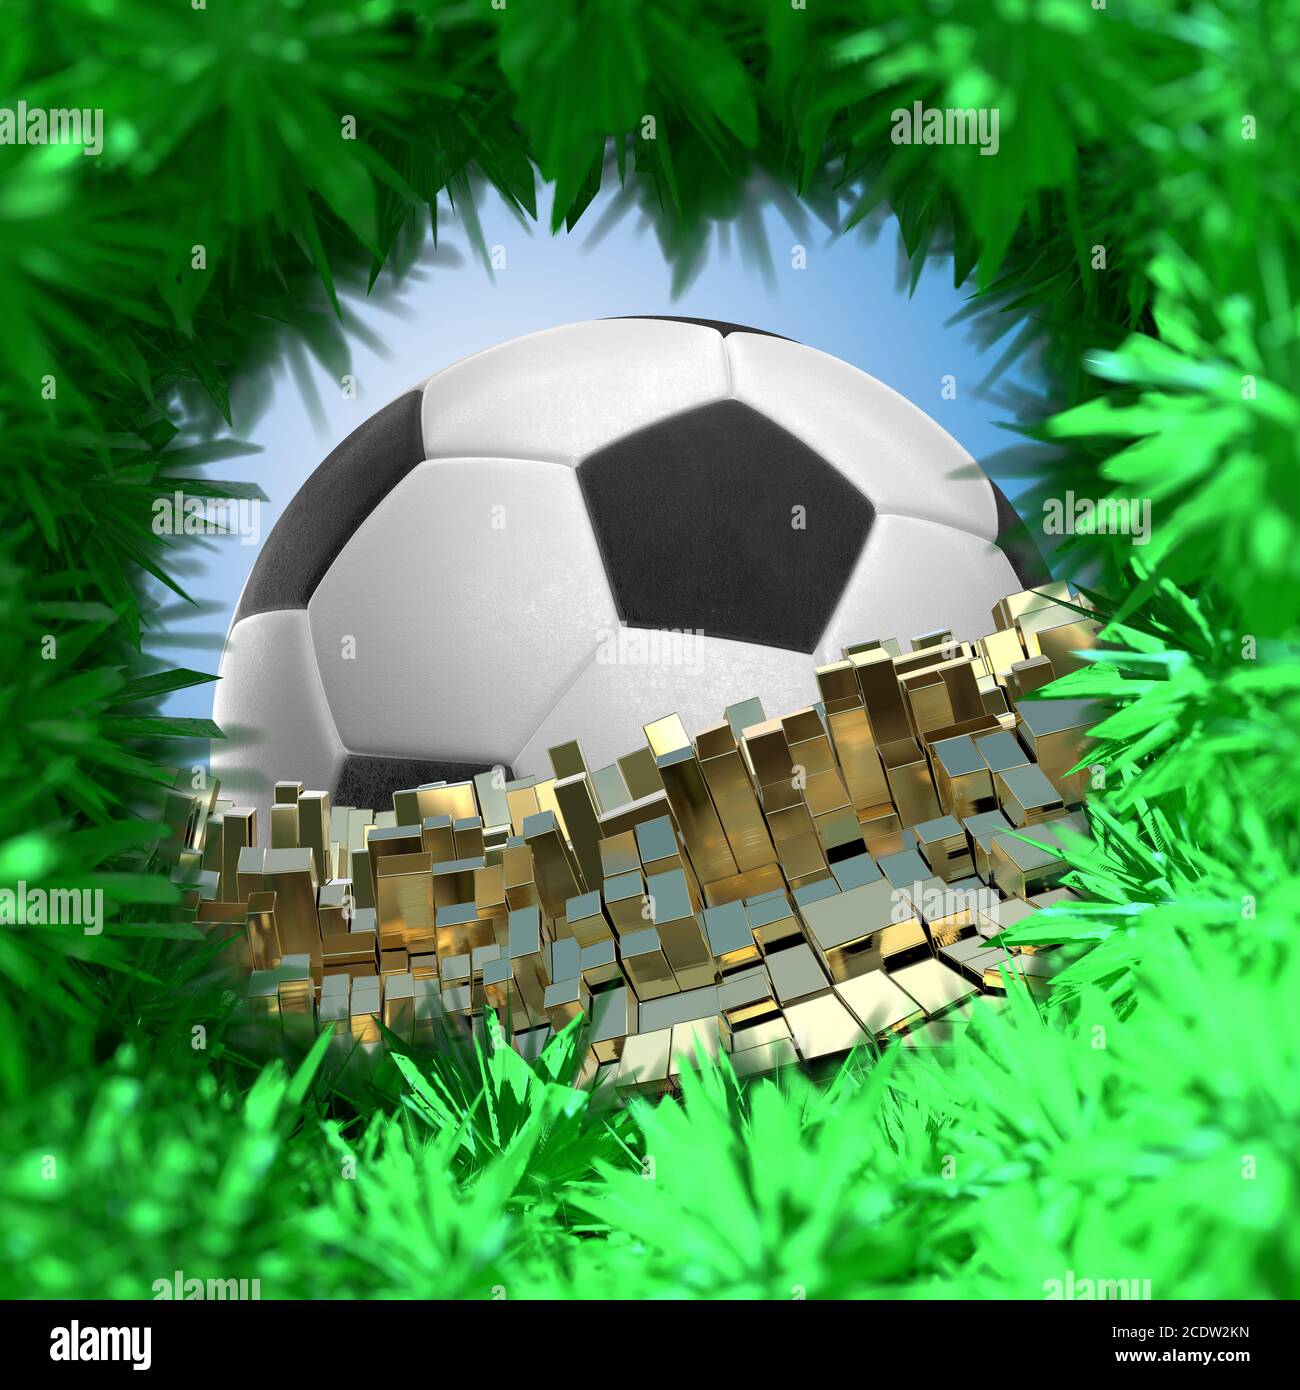 Pallone da calcio isolati su golden sfondo architettonico 3d illustrazione Foto Stock